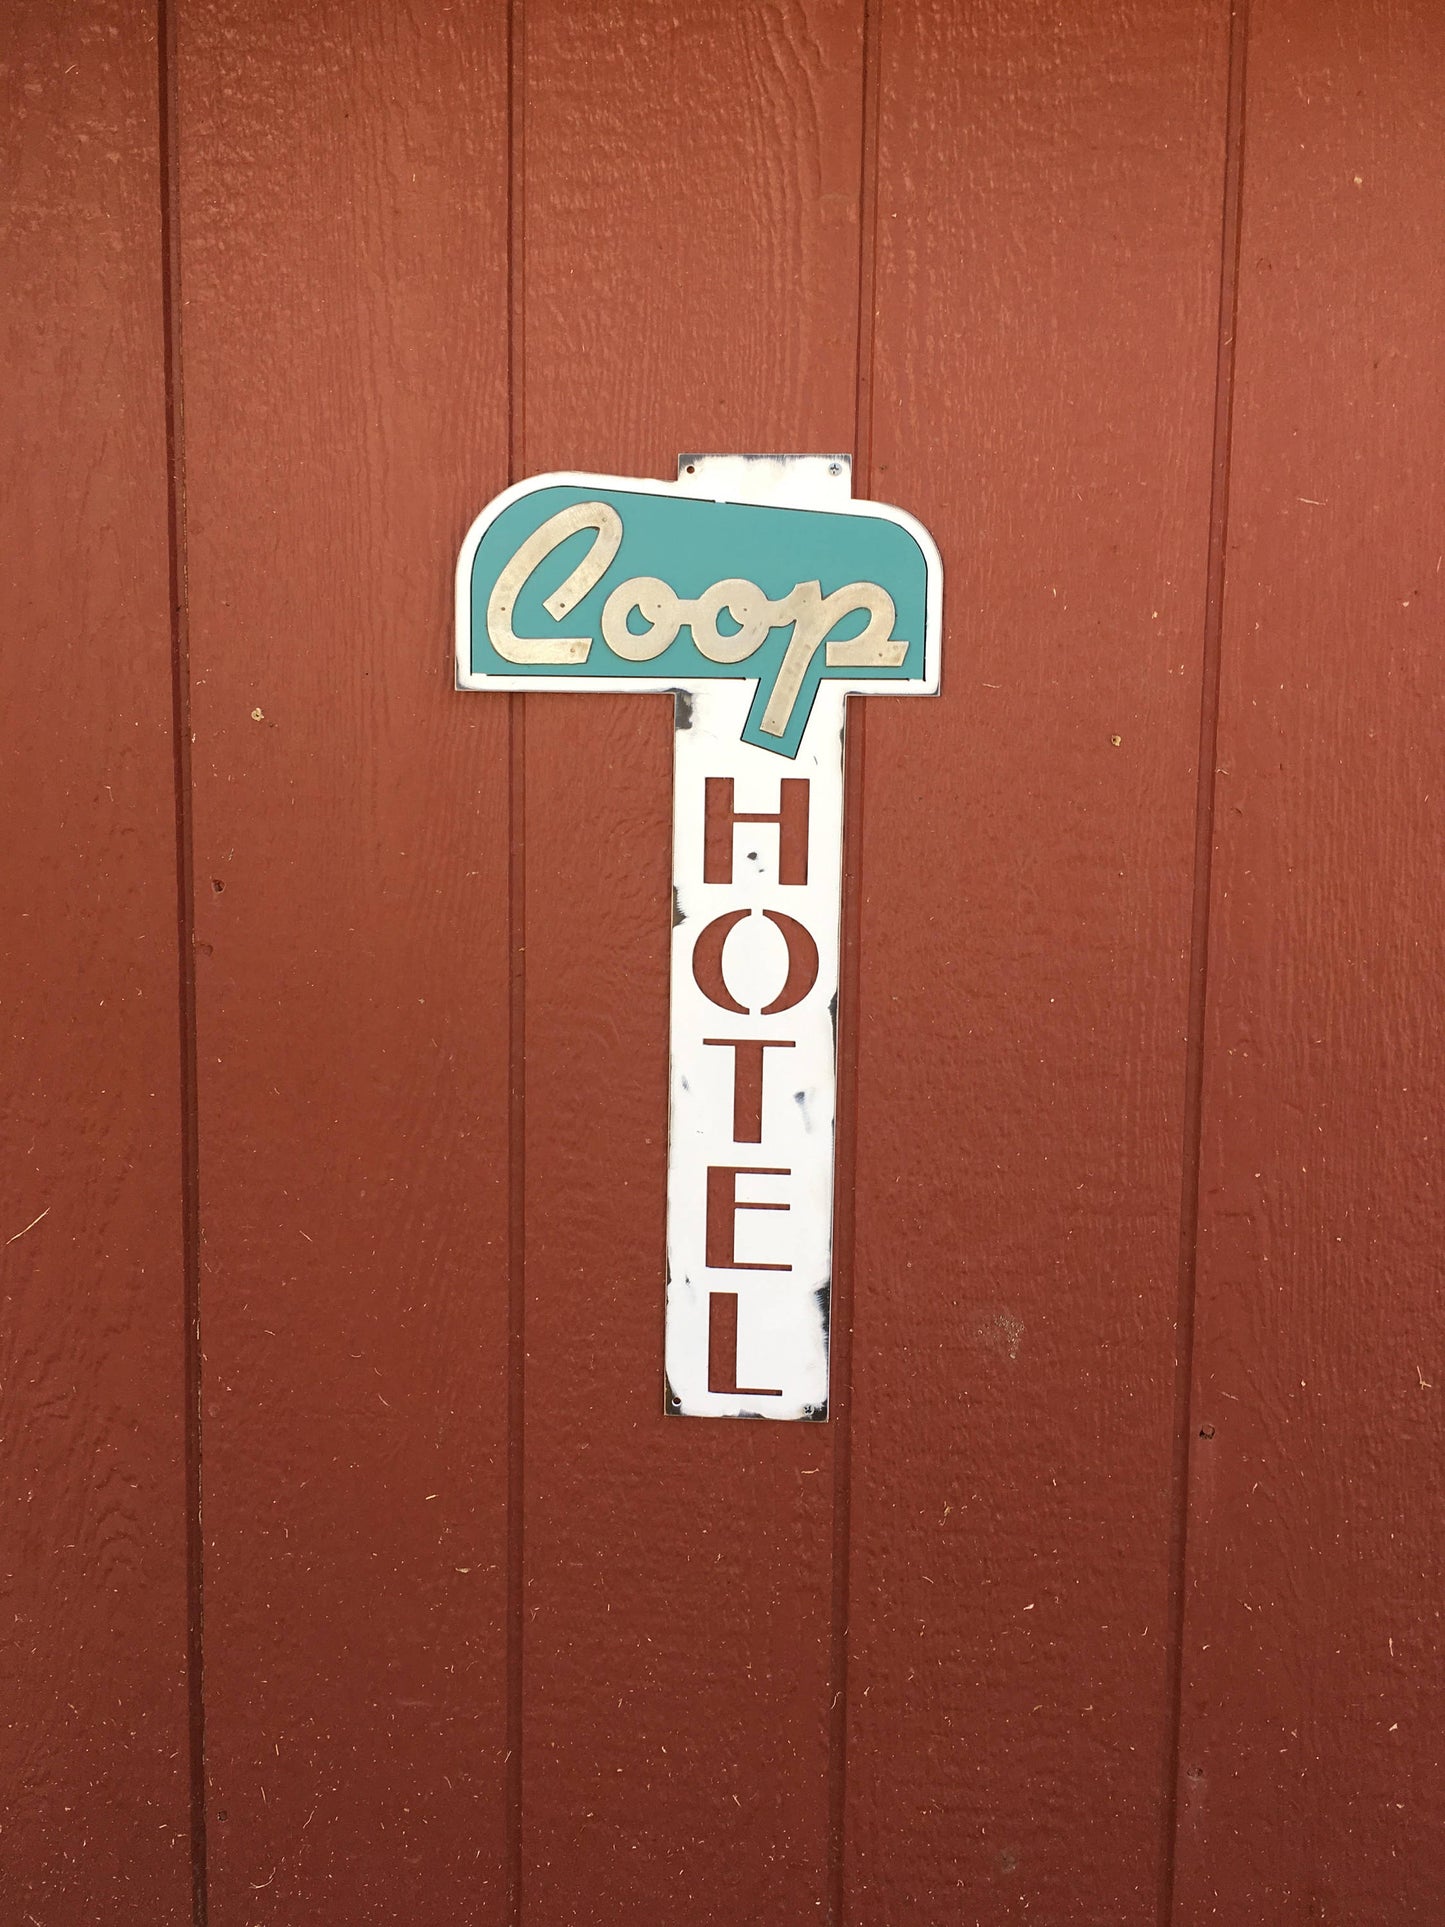 Coop Hotel Vintage Metal Sign